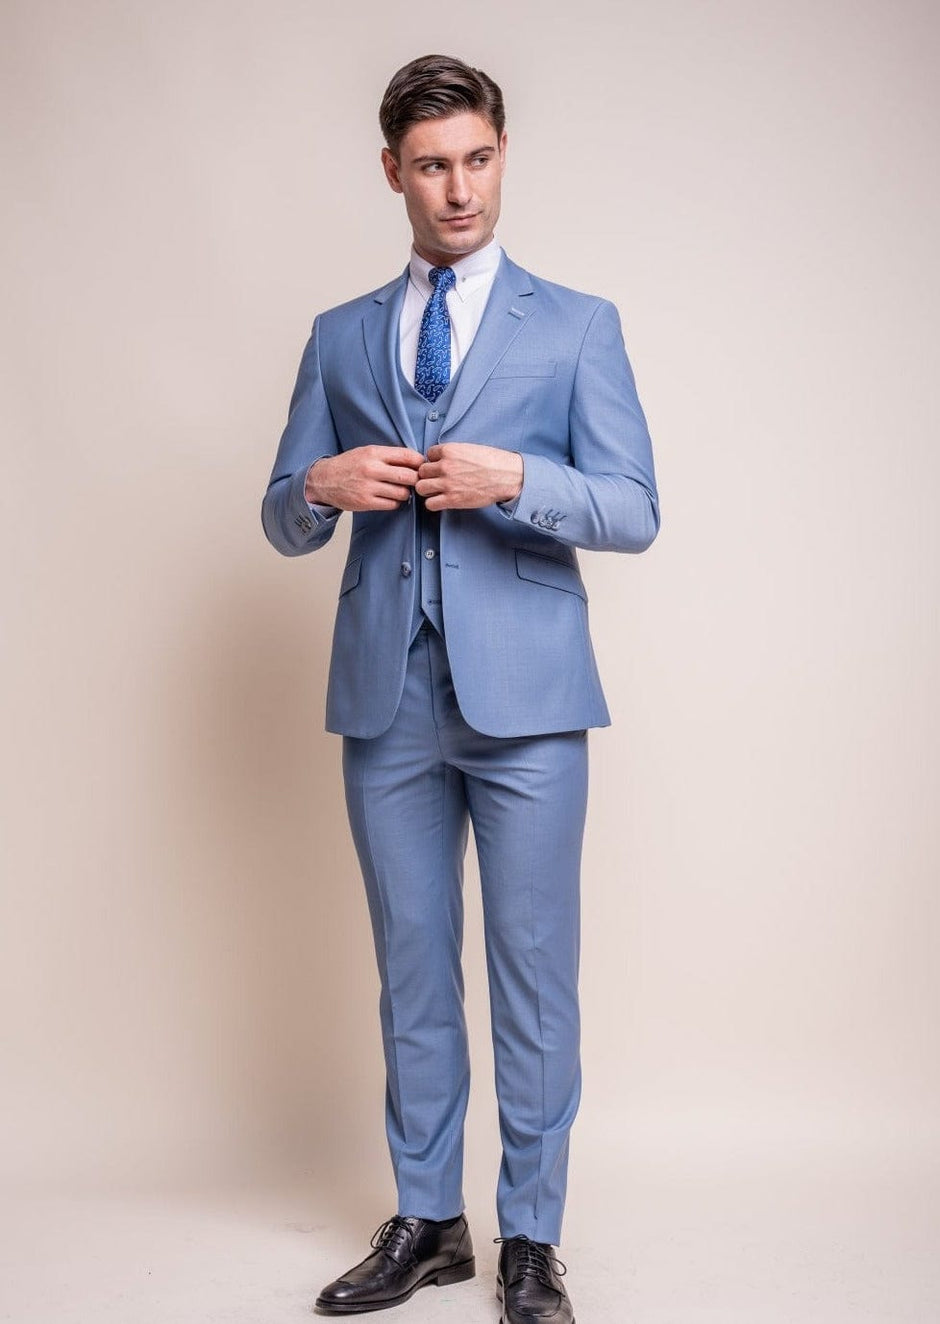 Men's Wedding Suits for Groom, Best Man & Guests | Menz Suits